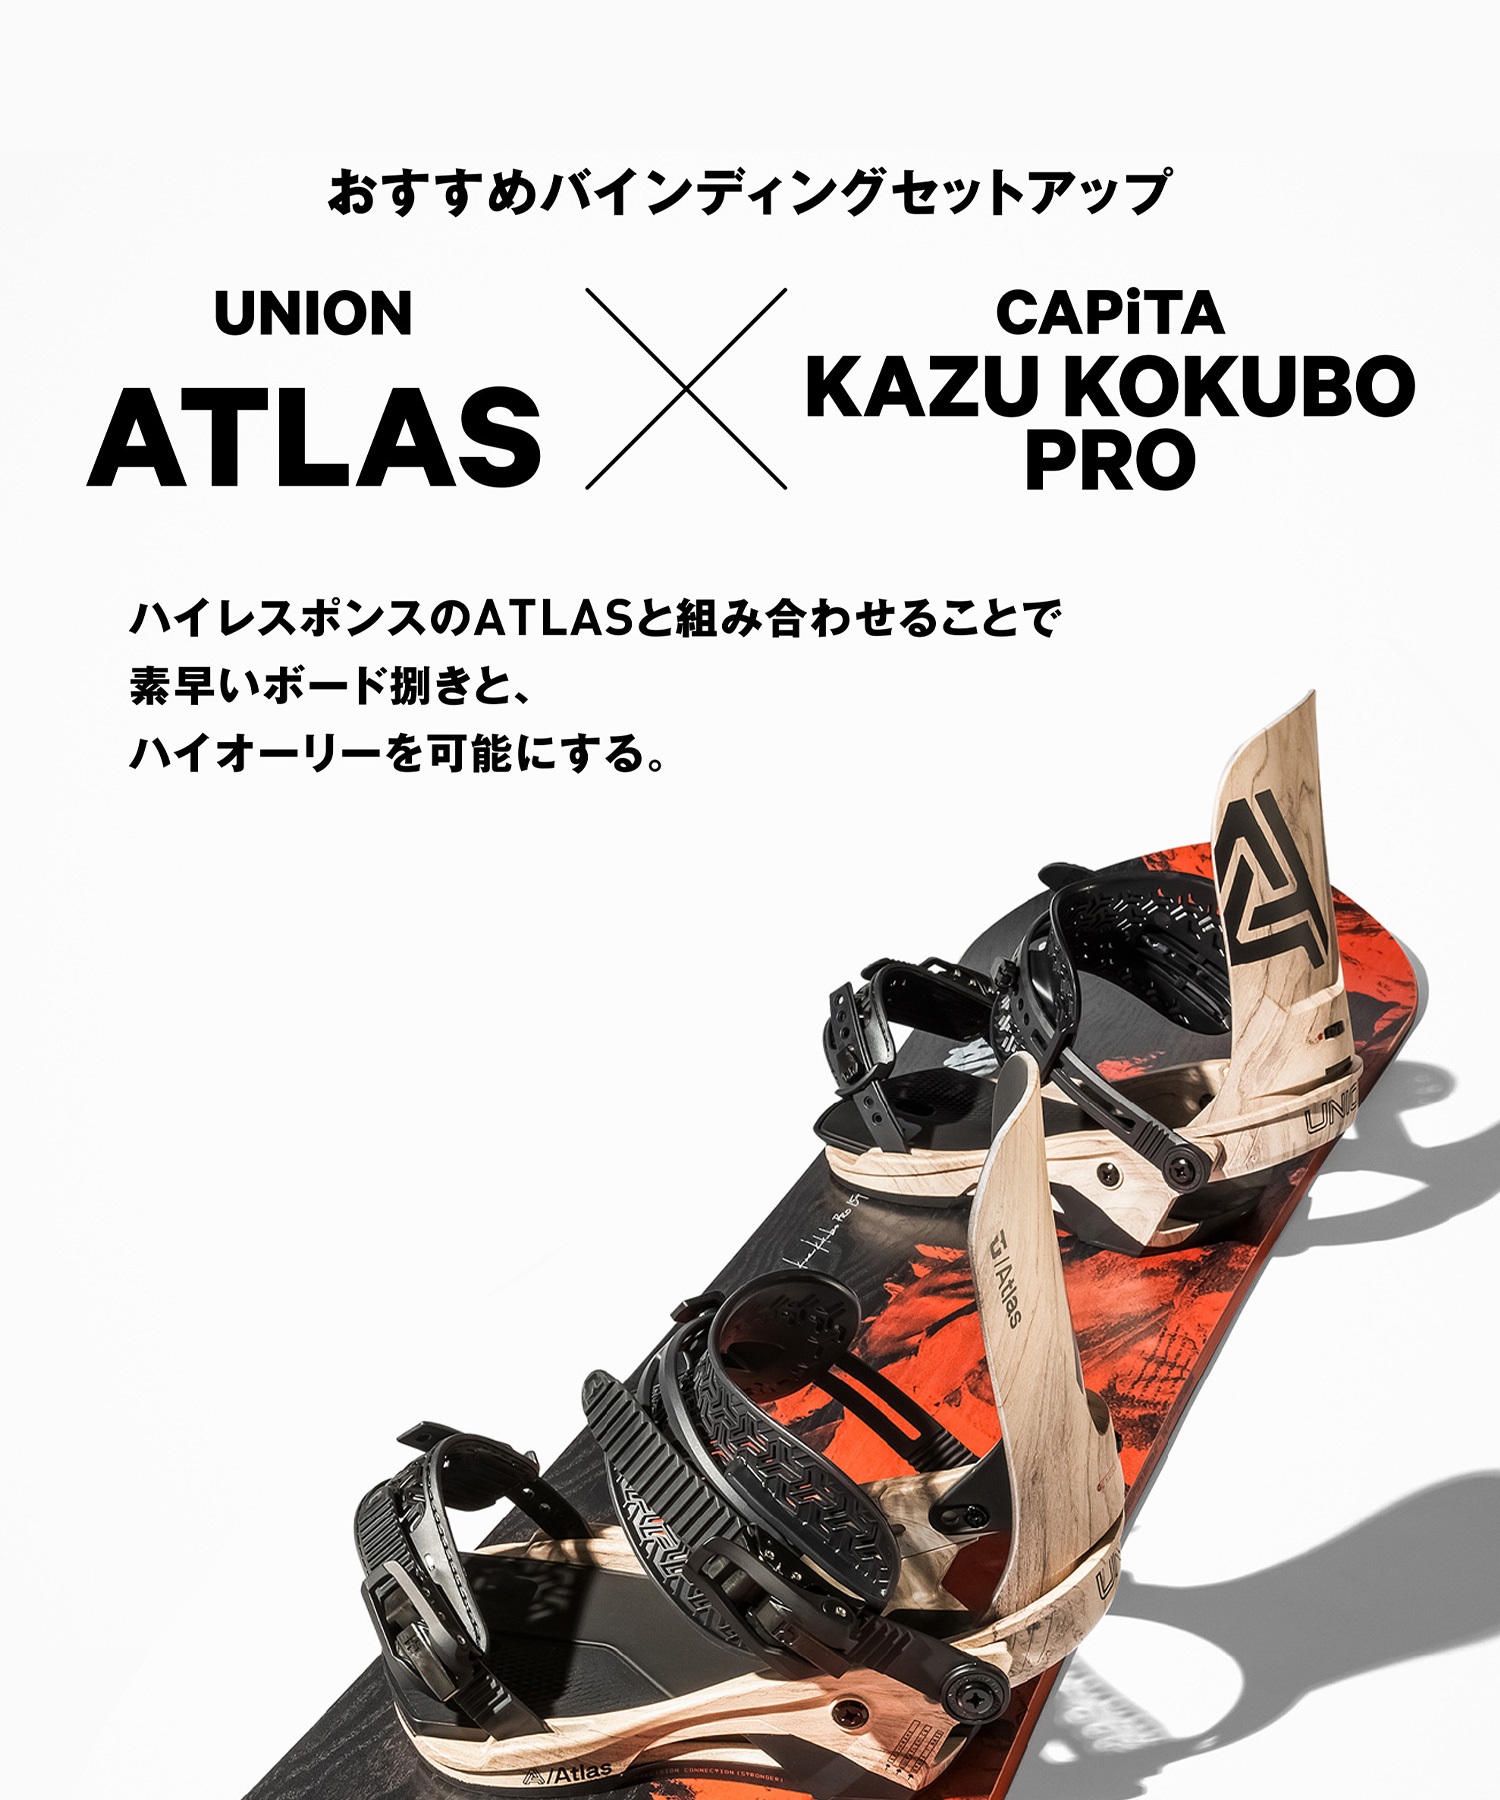 スノーボード 板 メンズ CAPITA キャピタ KAZU KOKUBO PRO 23-24モデル